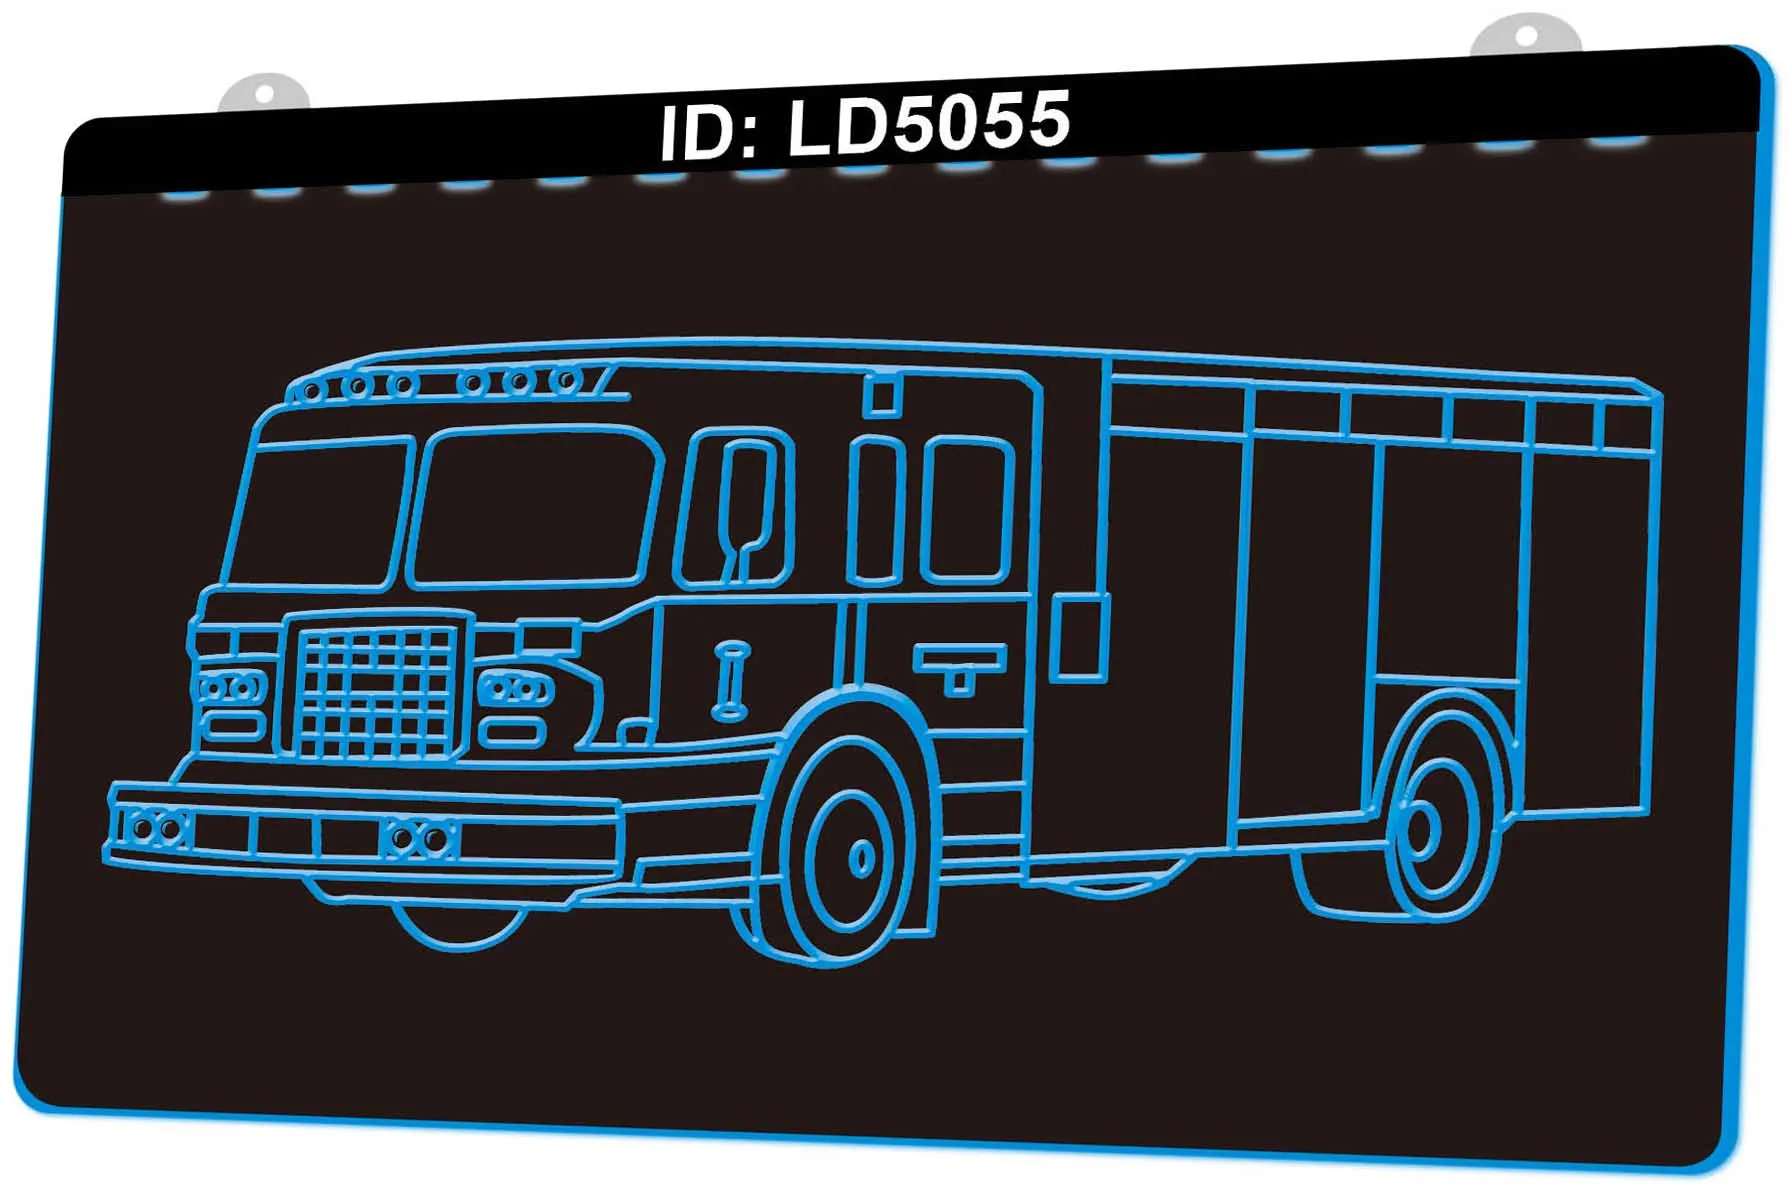 LD5055 brandweerwagens 3D gravure led licht teken groothandel detailhandel